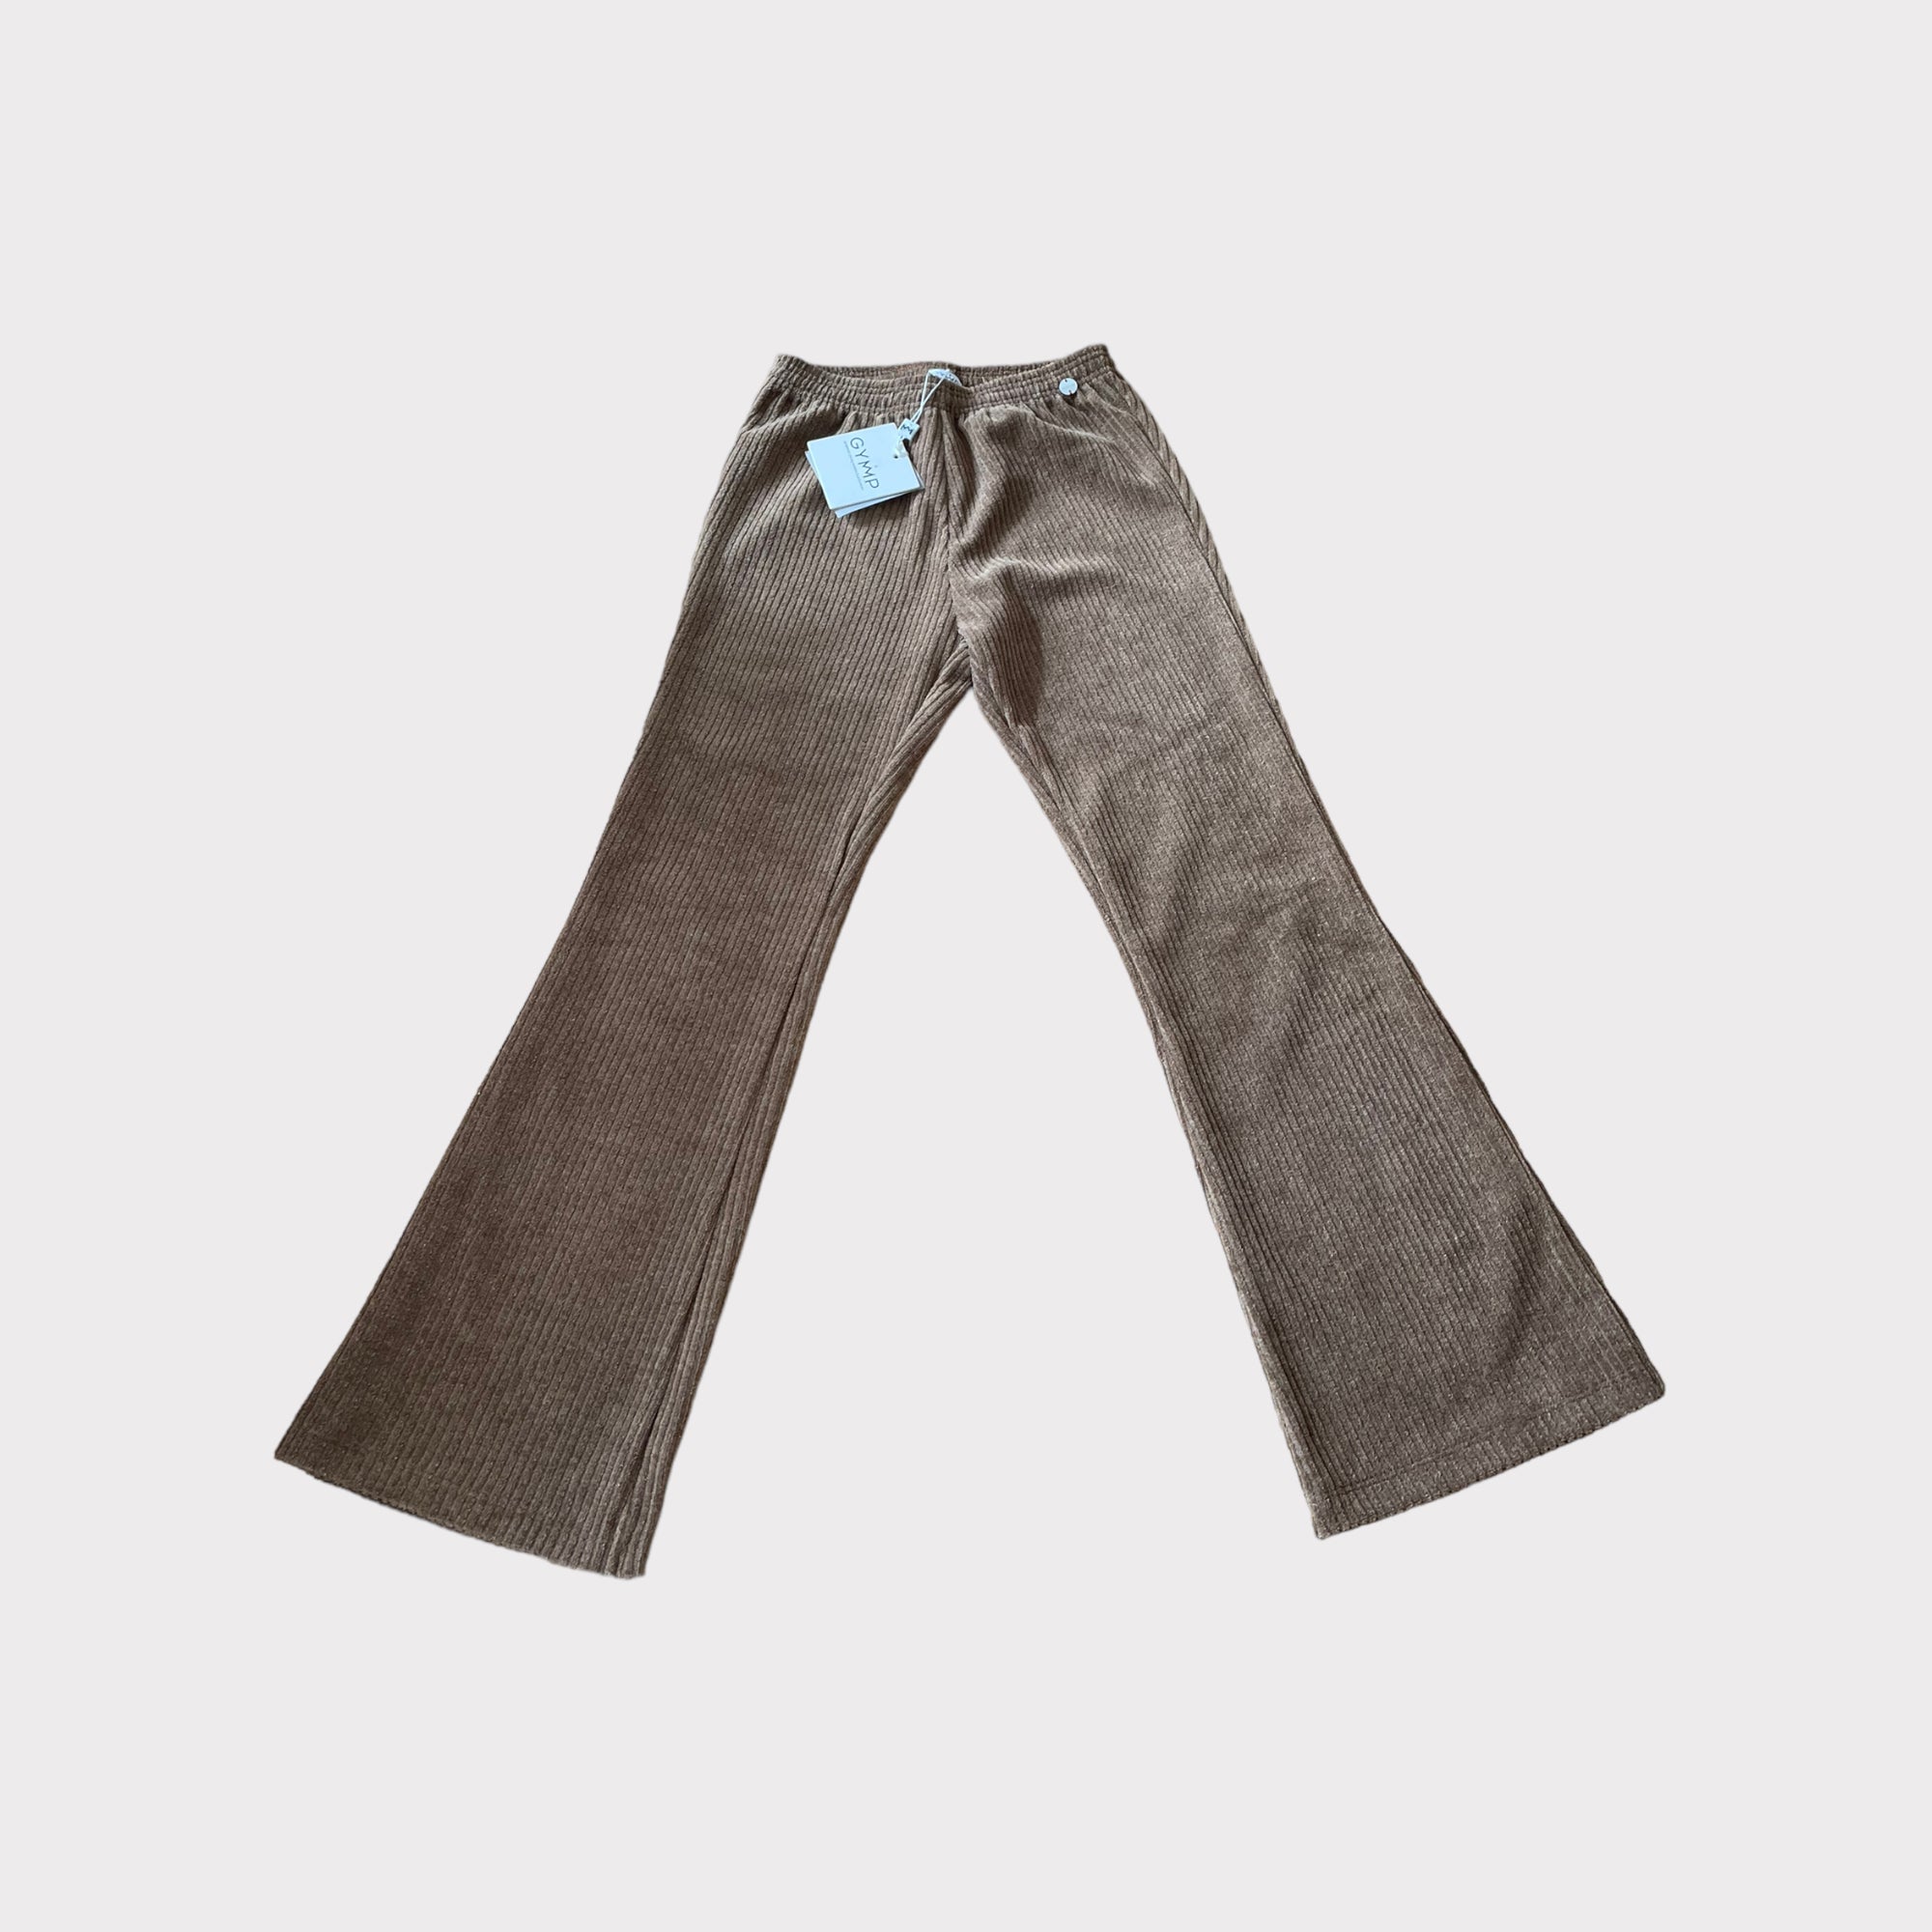 Pantalon GYMP 8 ans 128 cm neuf avec étiquette